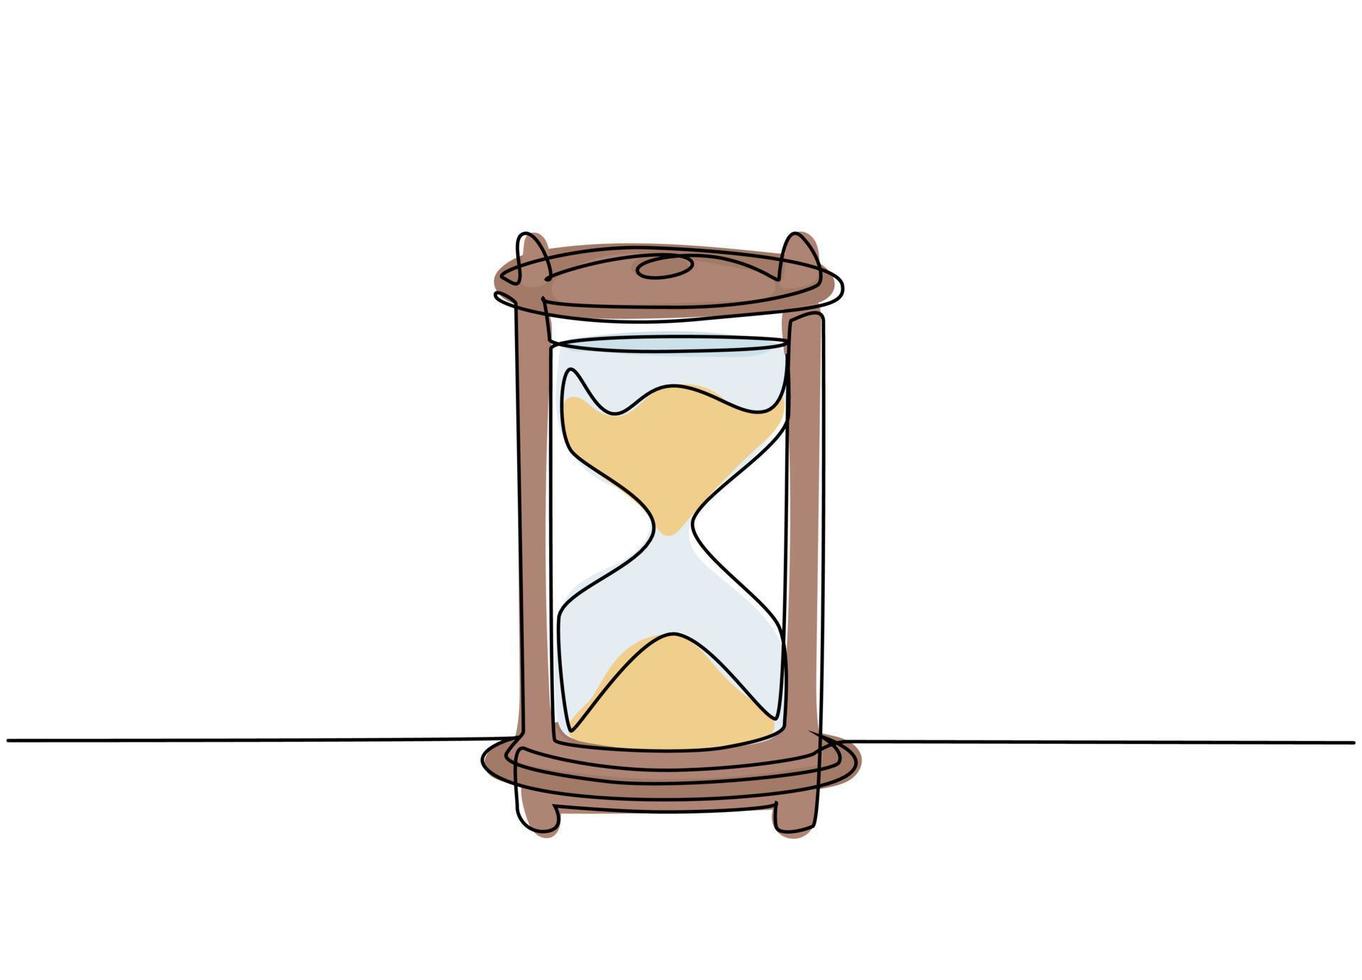 un dibujo de línea continua del antiguo reloj de arena clásico para decir la hora. vidrio de arena de tiempo retro vintage, concepto de reloj. Ilustración gráfica de vector de diseño de dibujo de una sola línea